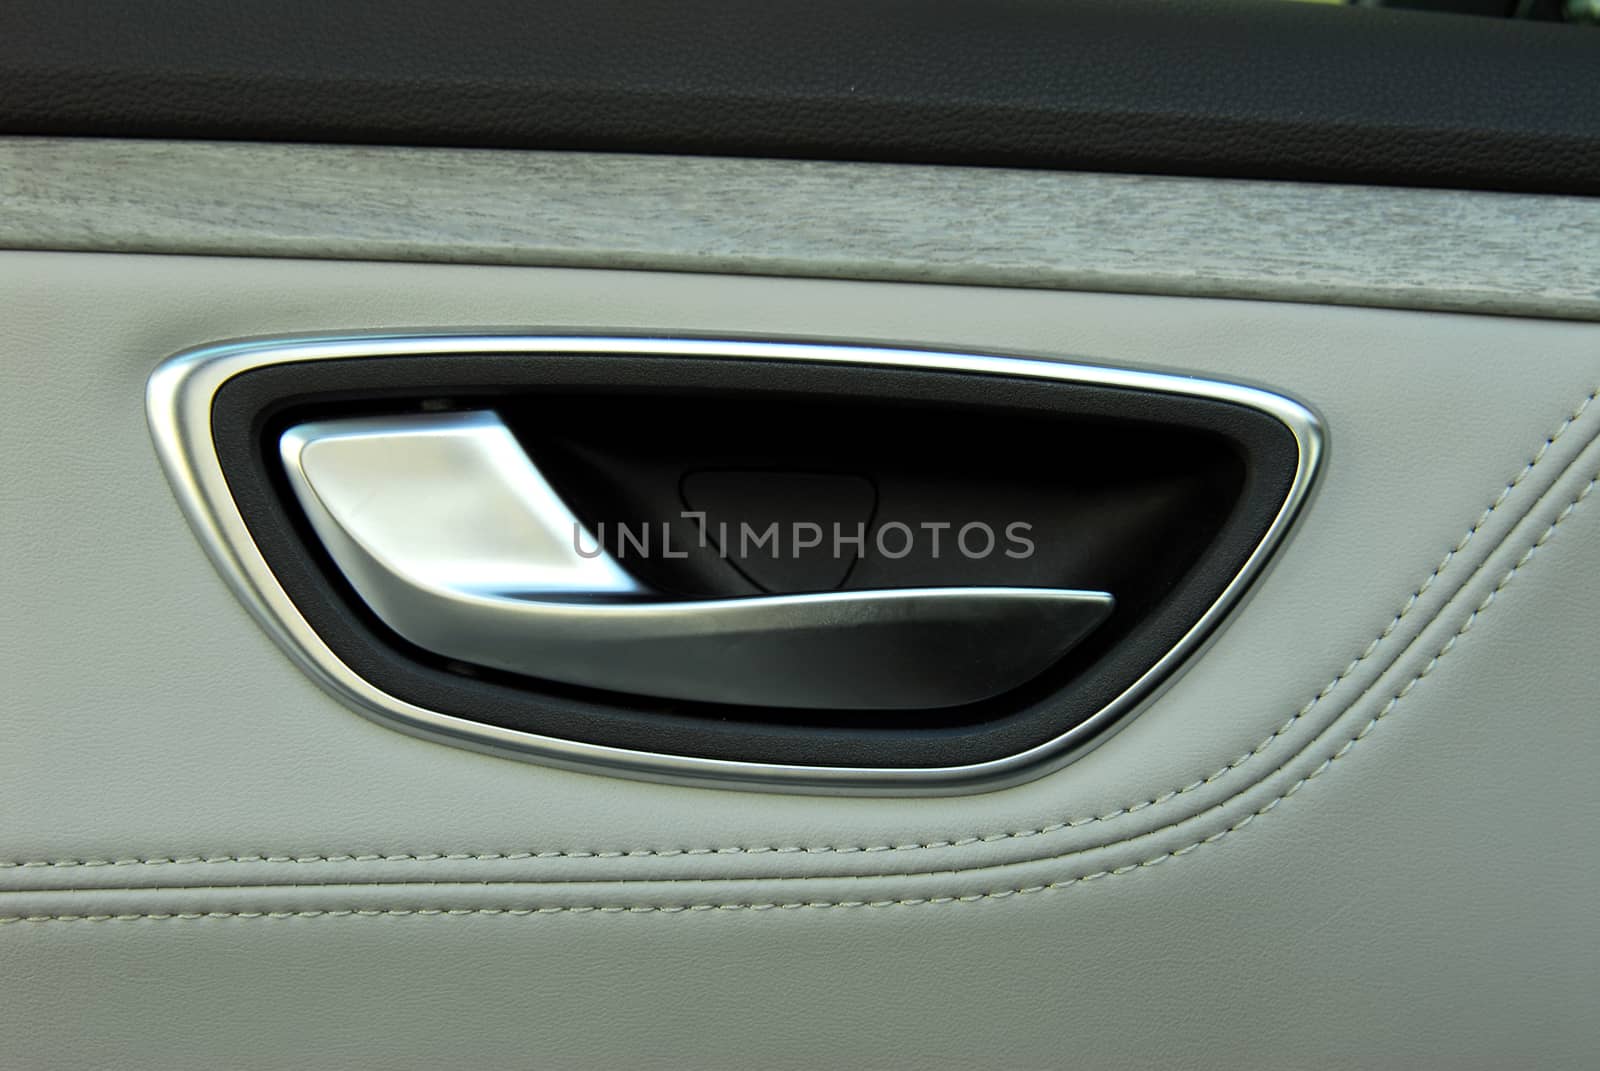 handle to open the door in a luxury car